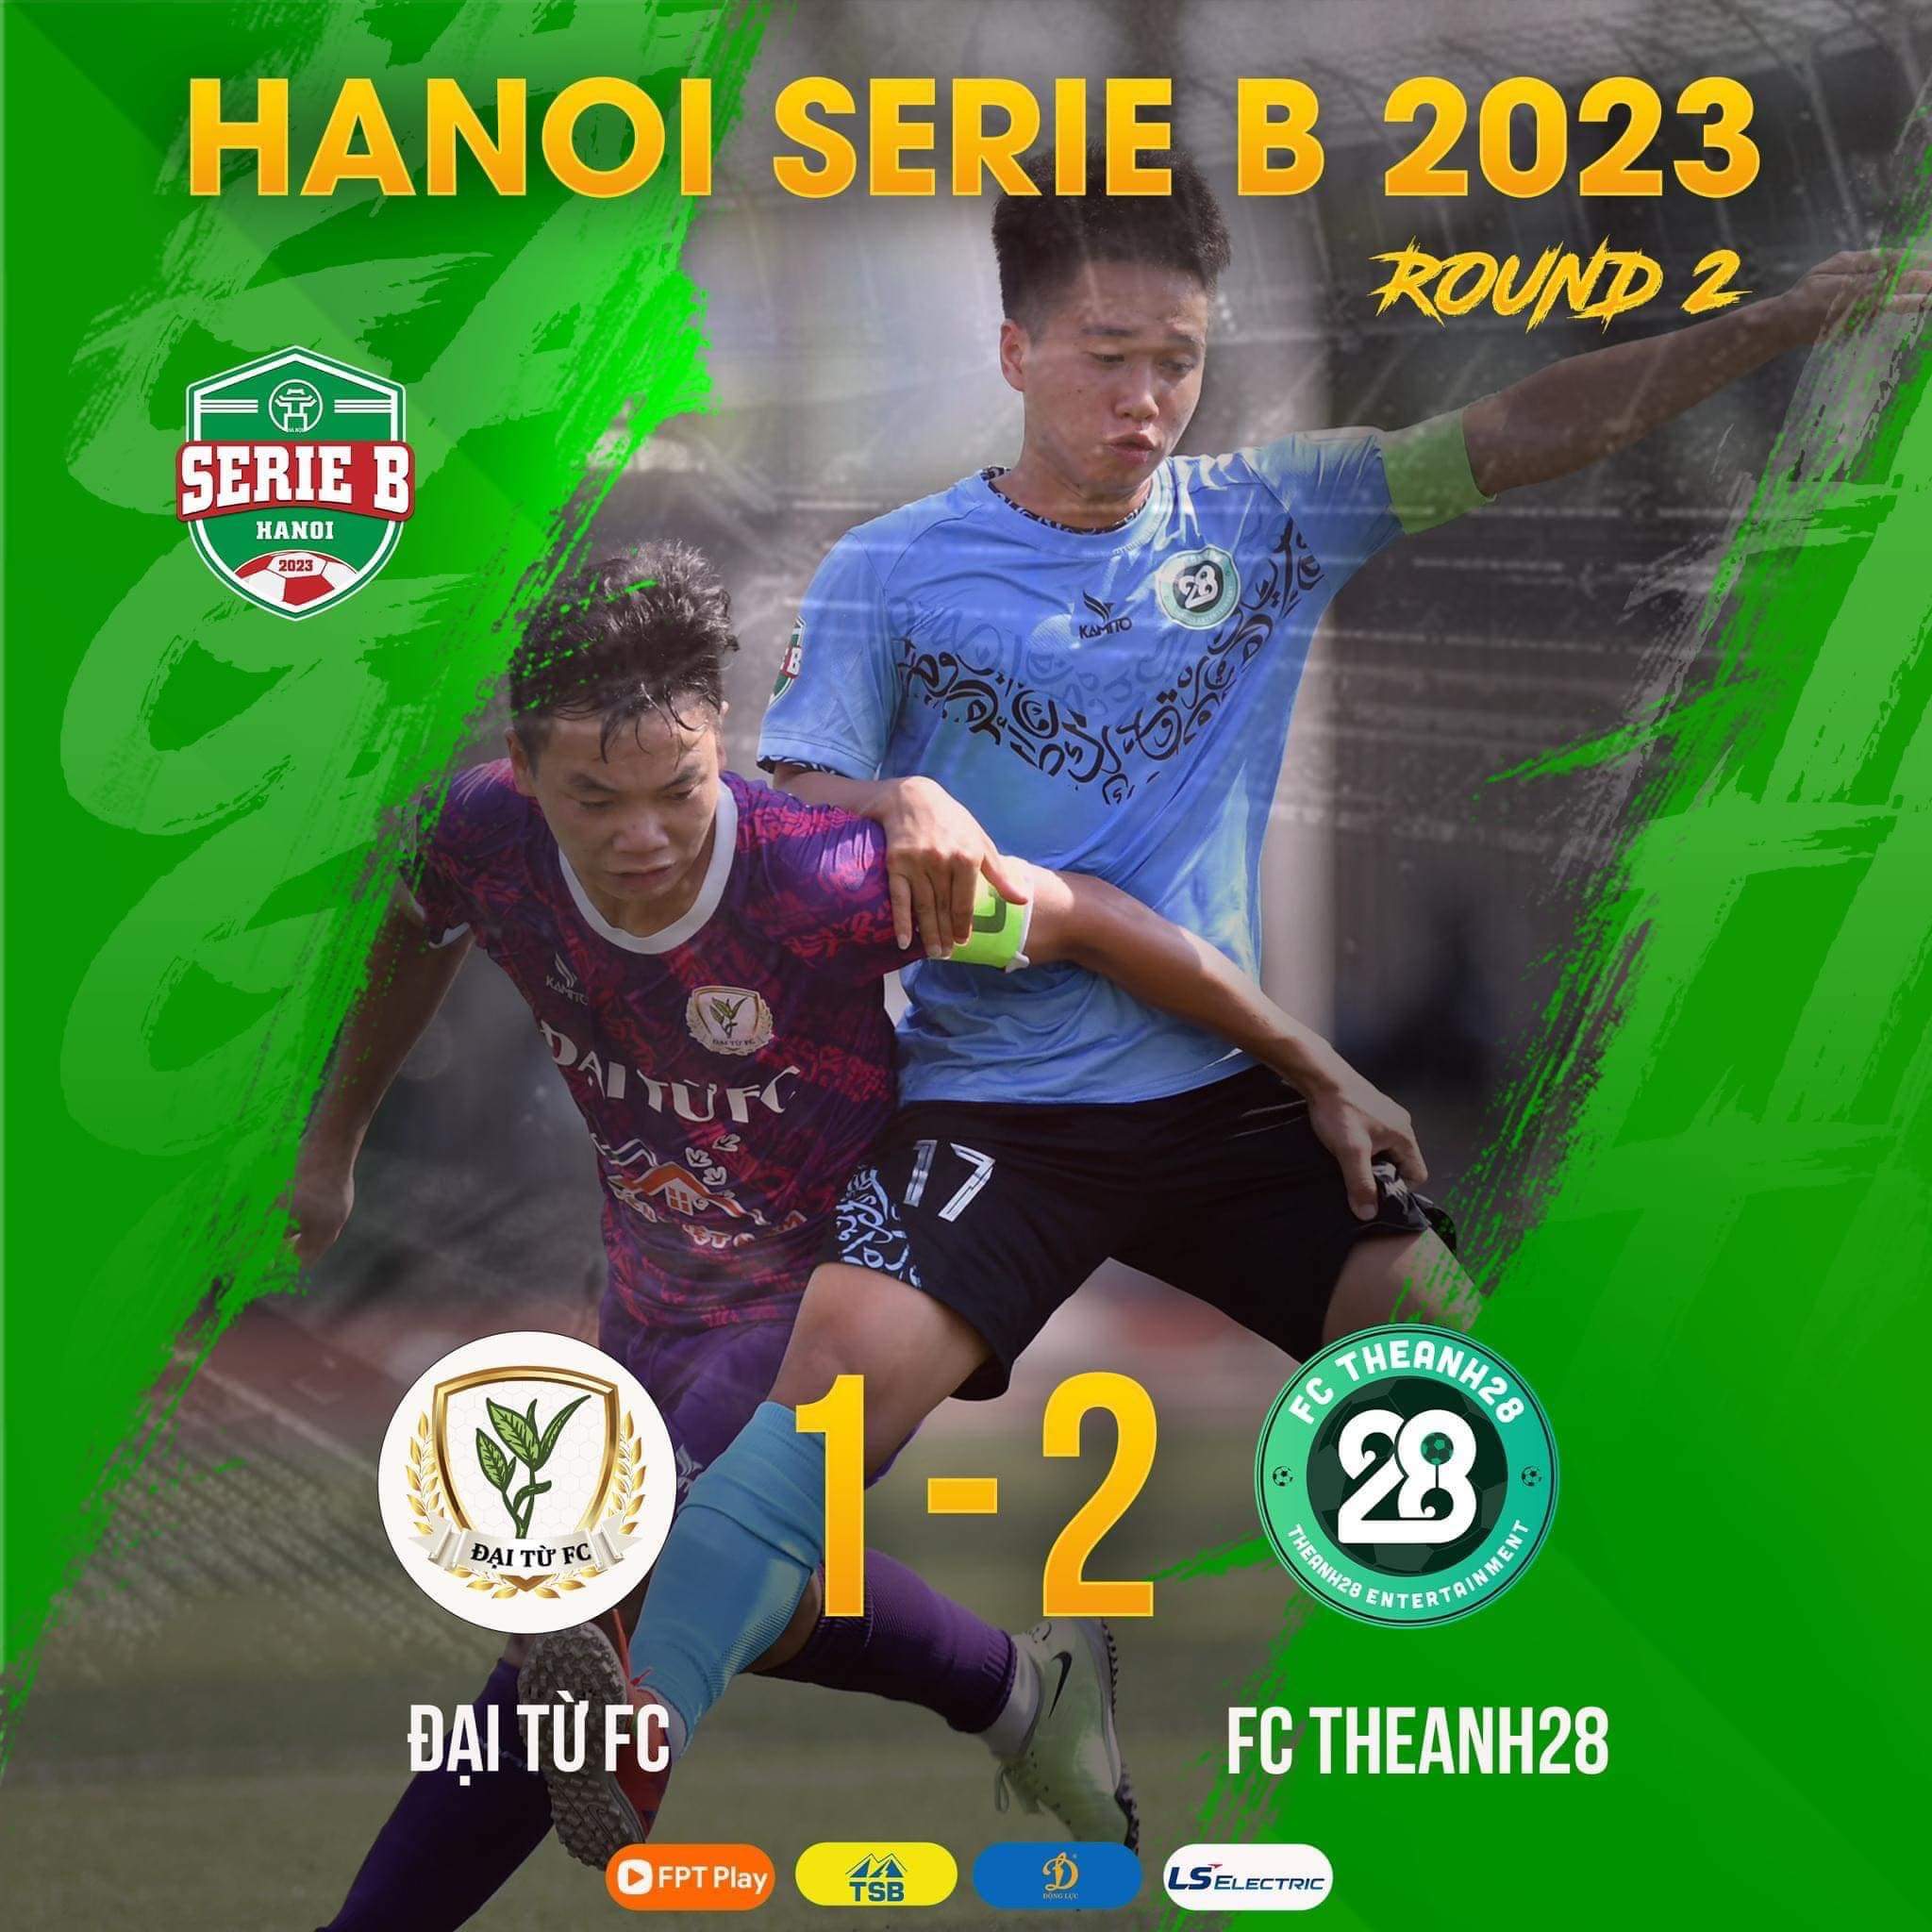 Chúc mừng Theanh28 FC có chiến thắng thứ 2 tại giải Hanoi Serie B 2023